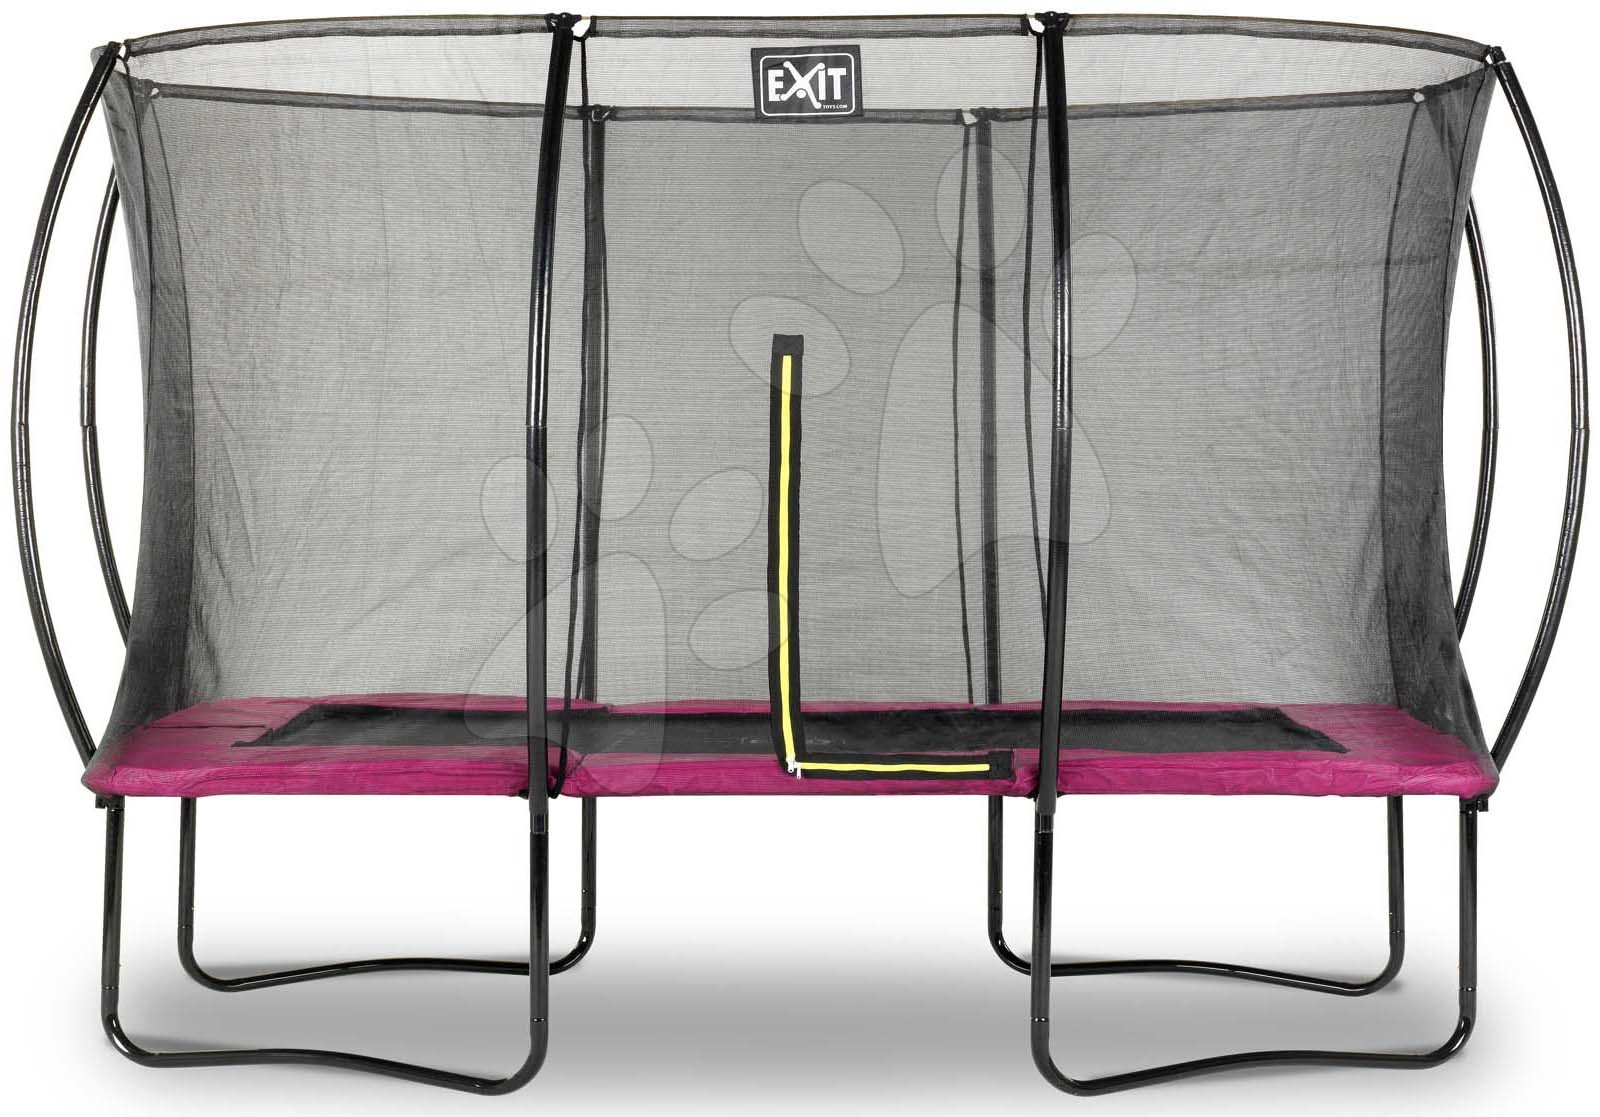 Trampolína s ochrannou sieťou Silhouette trampoline Pink Exit Toys 244*366 cm ružová